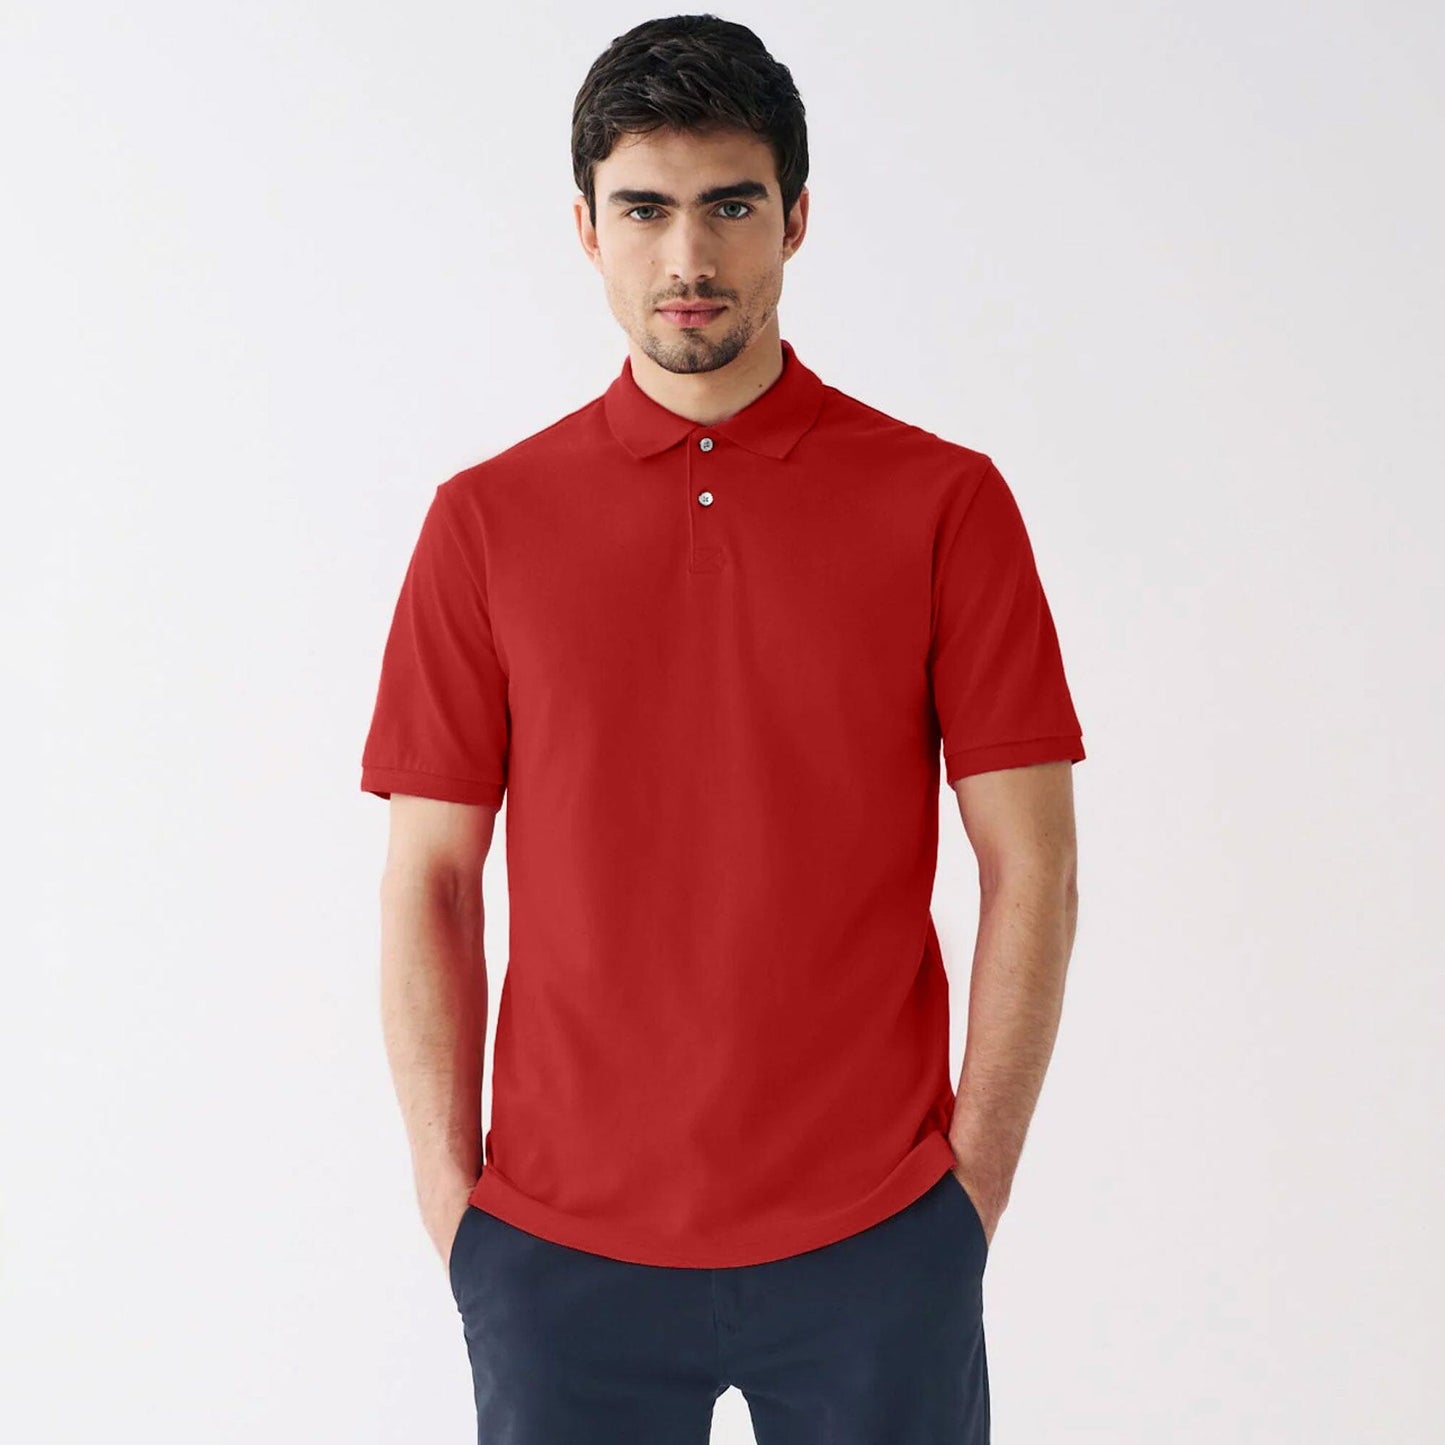 Polo Republica Men's Essentials Premium Short Sleeve Polo Shirt Men's Polo Shirt Polo Republica Red S 